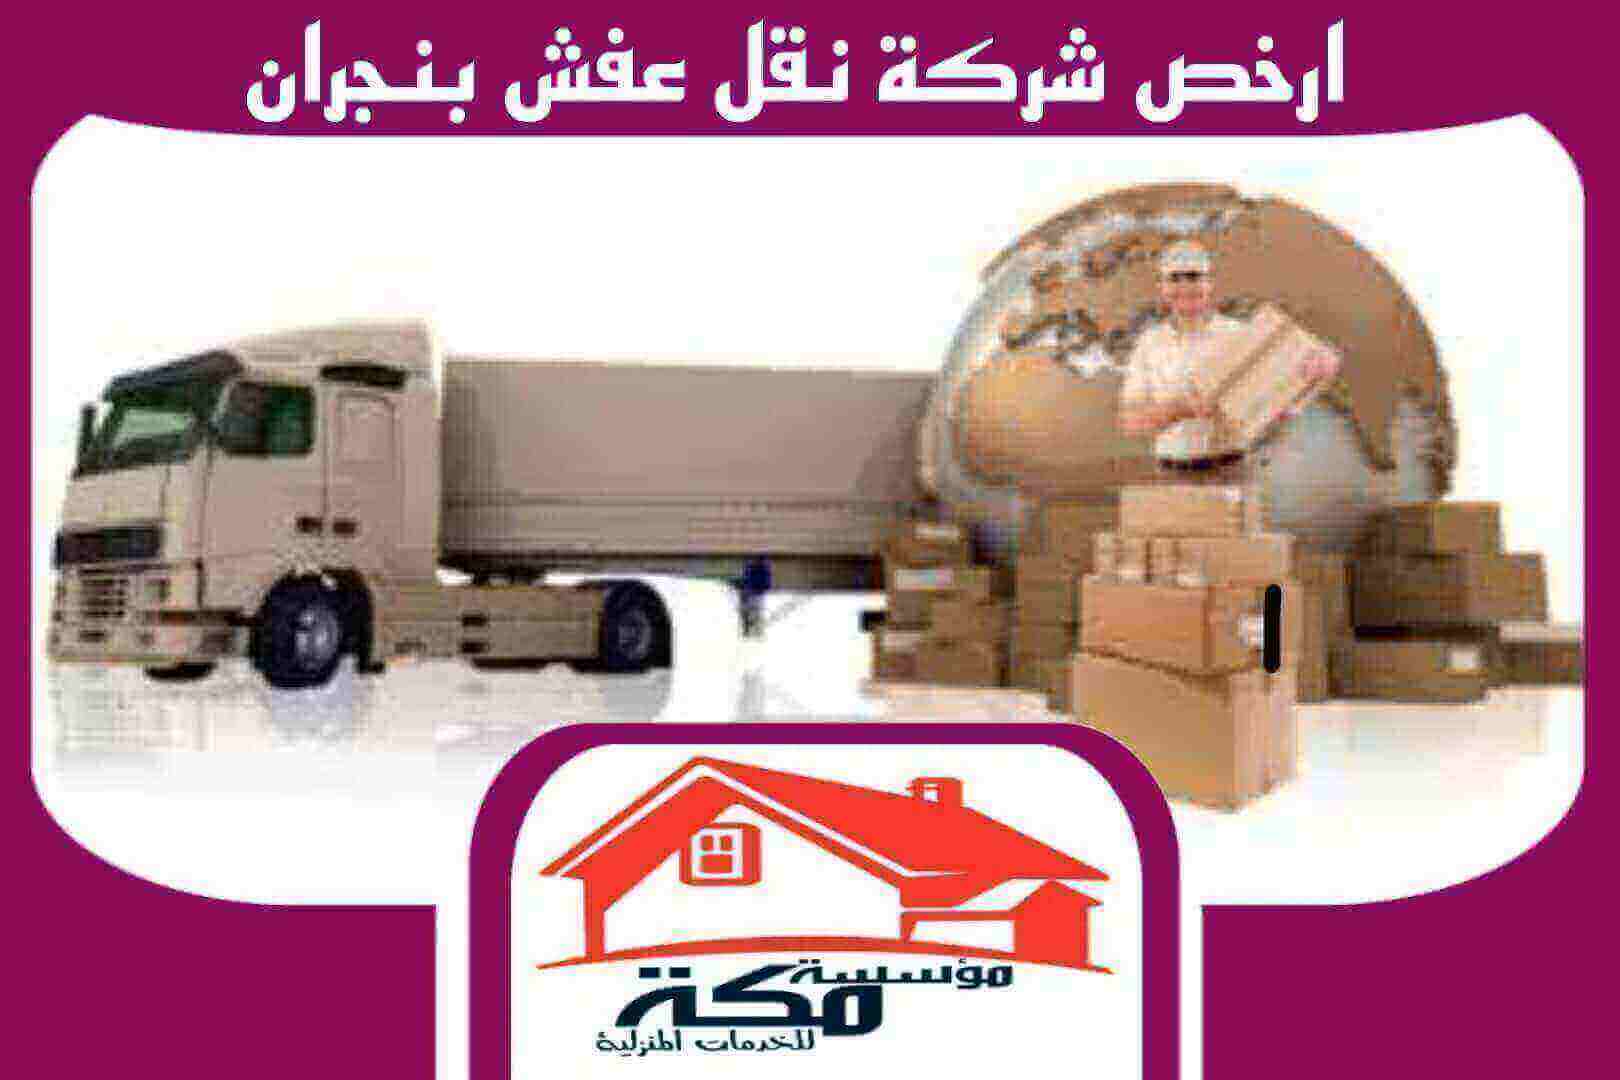 ارخص شركة نقل عفش بنجران للايجار 00201211437511 مكة للخدمات المنزلية